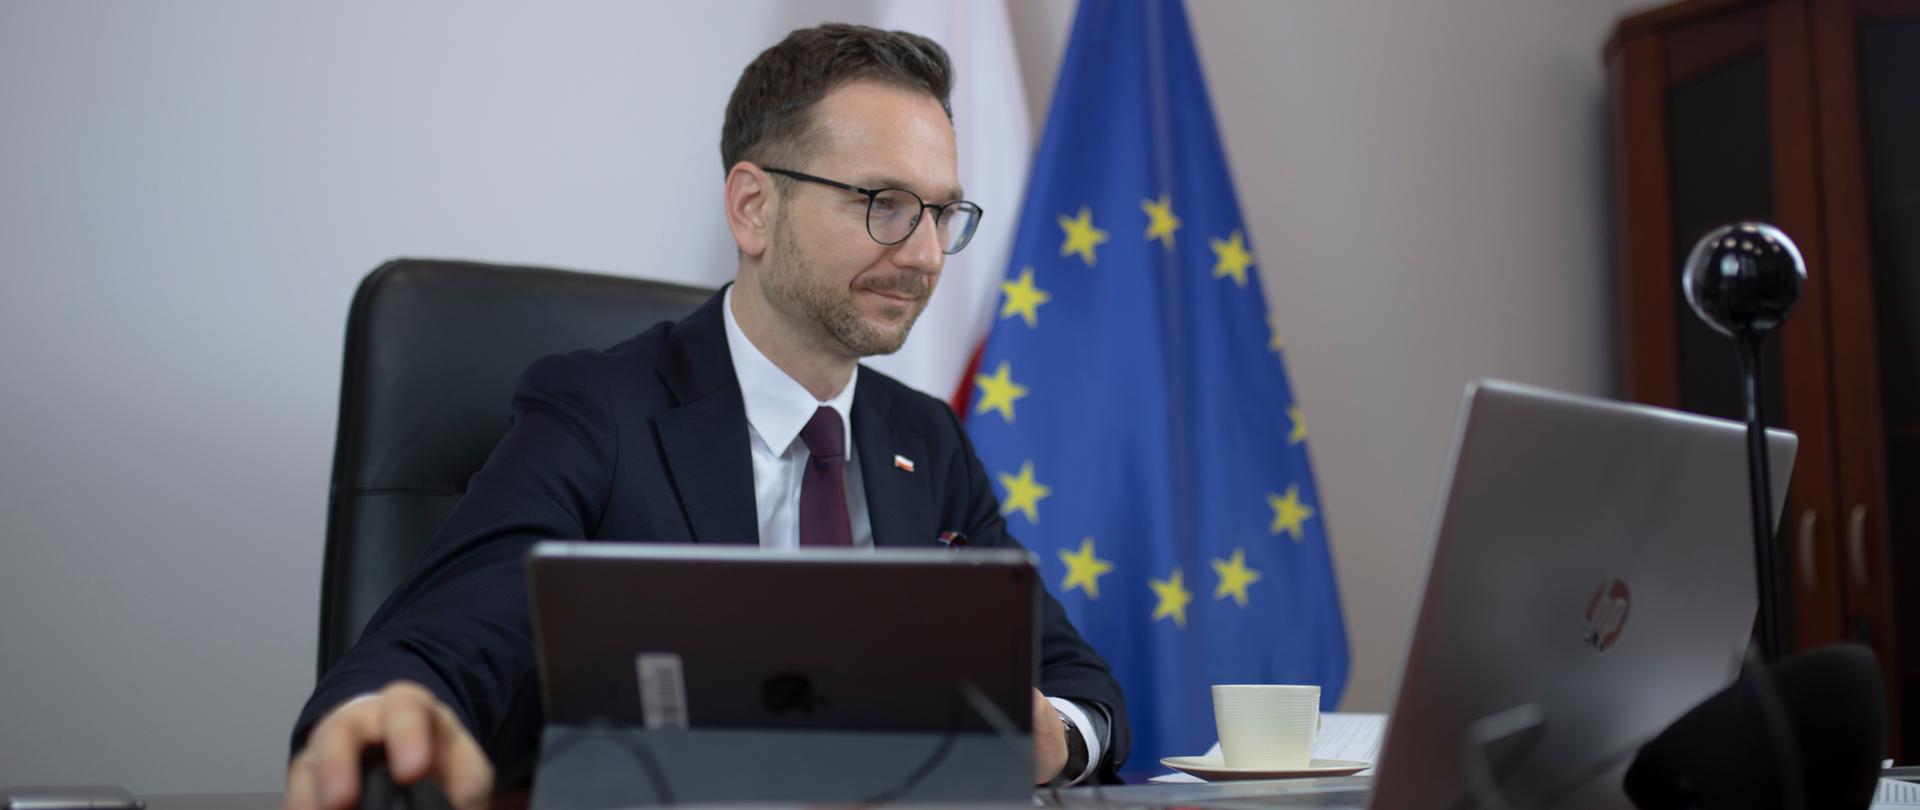 wiceminister Waldemar Buda przed komputerem, za nim flagi Polski i Unii Europejskiej